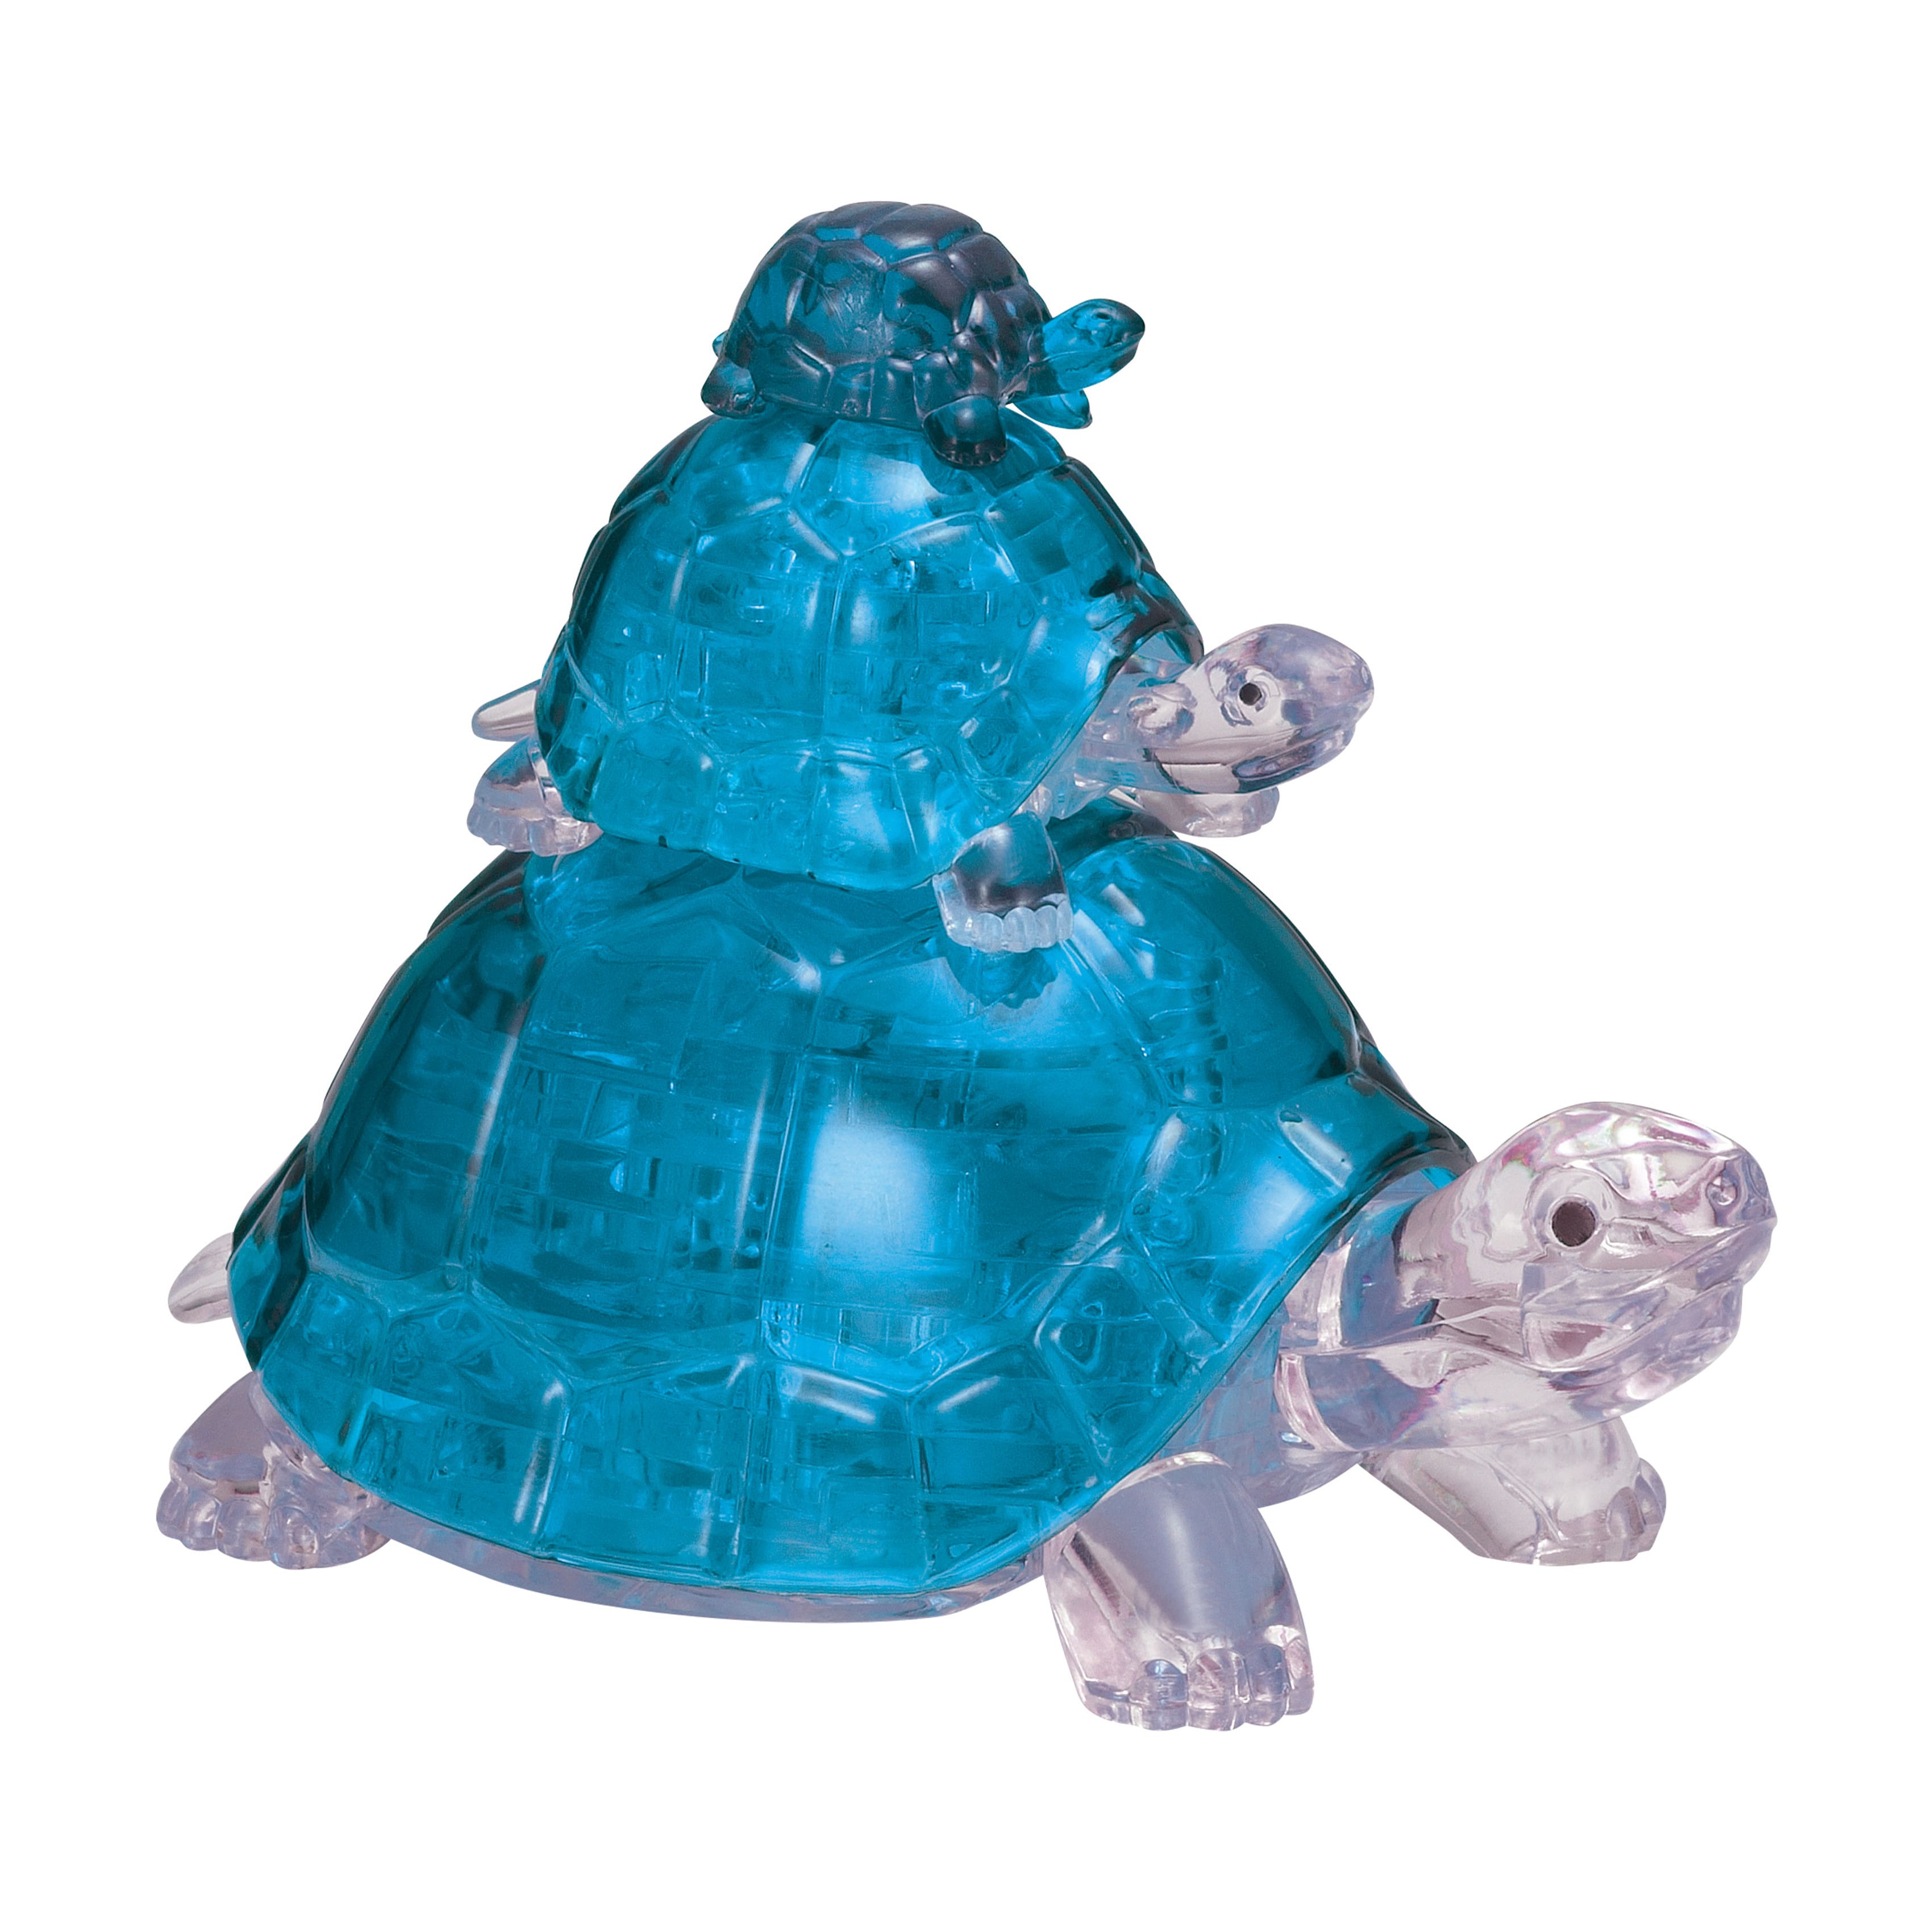 3D Crystal Puzzle - Turtles (Blue): 37 Pcs